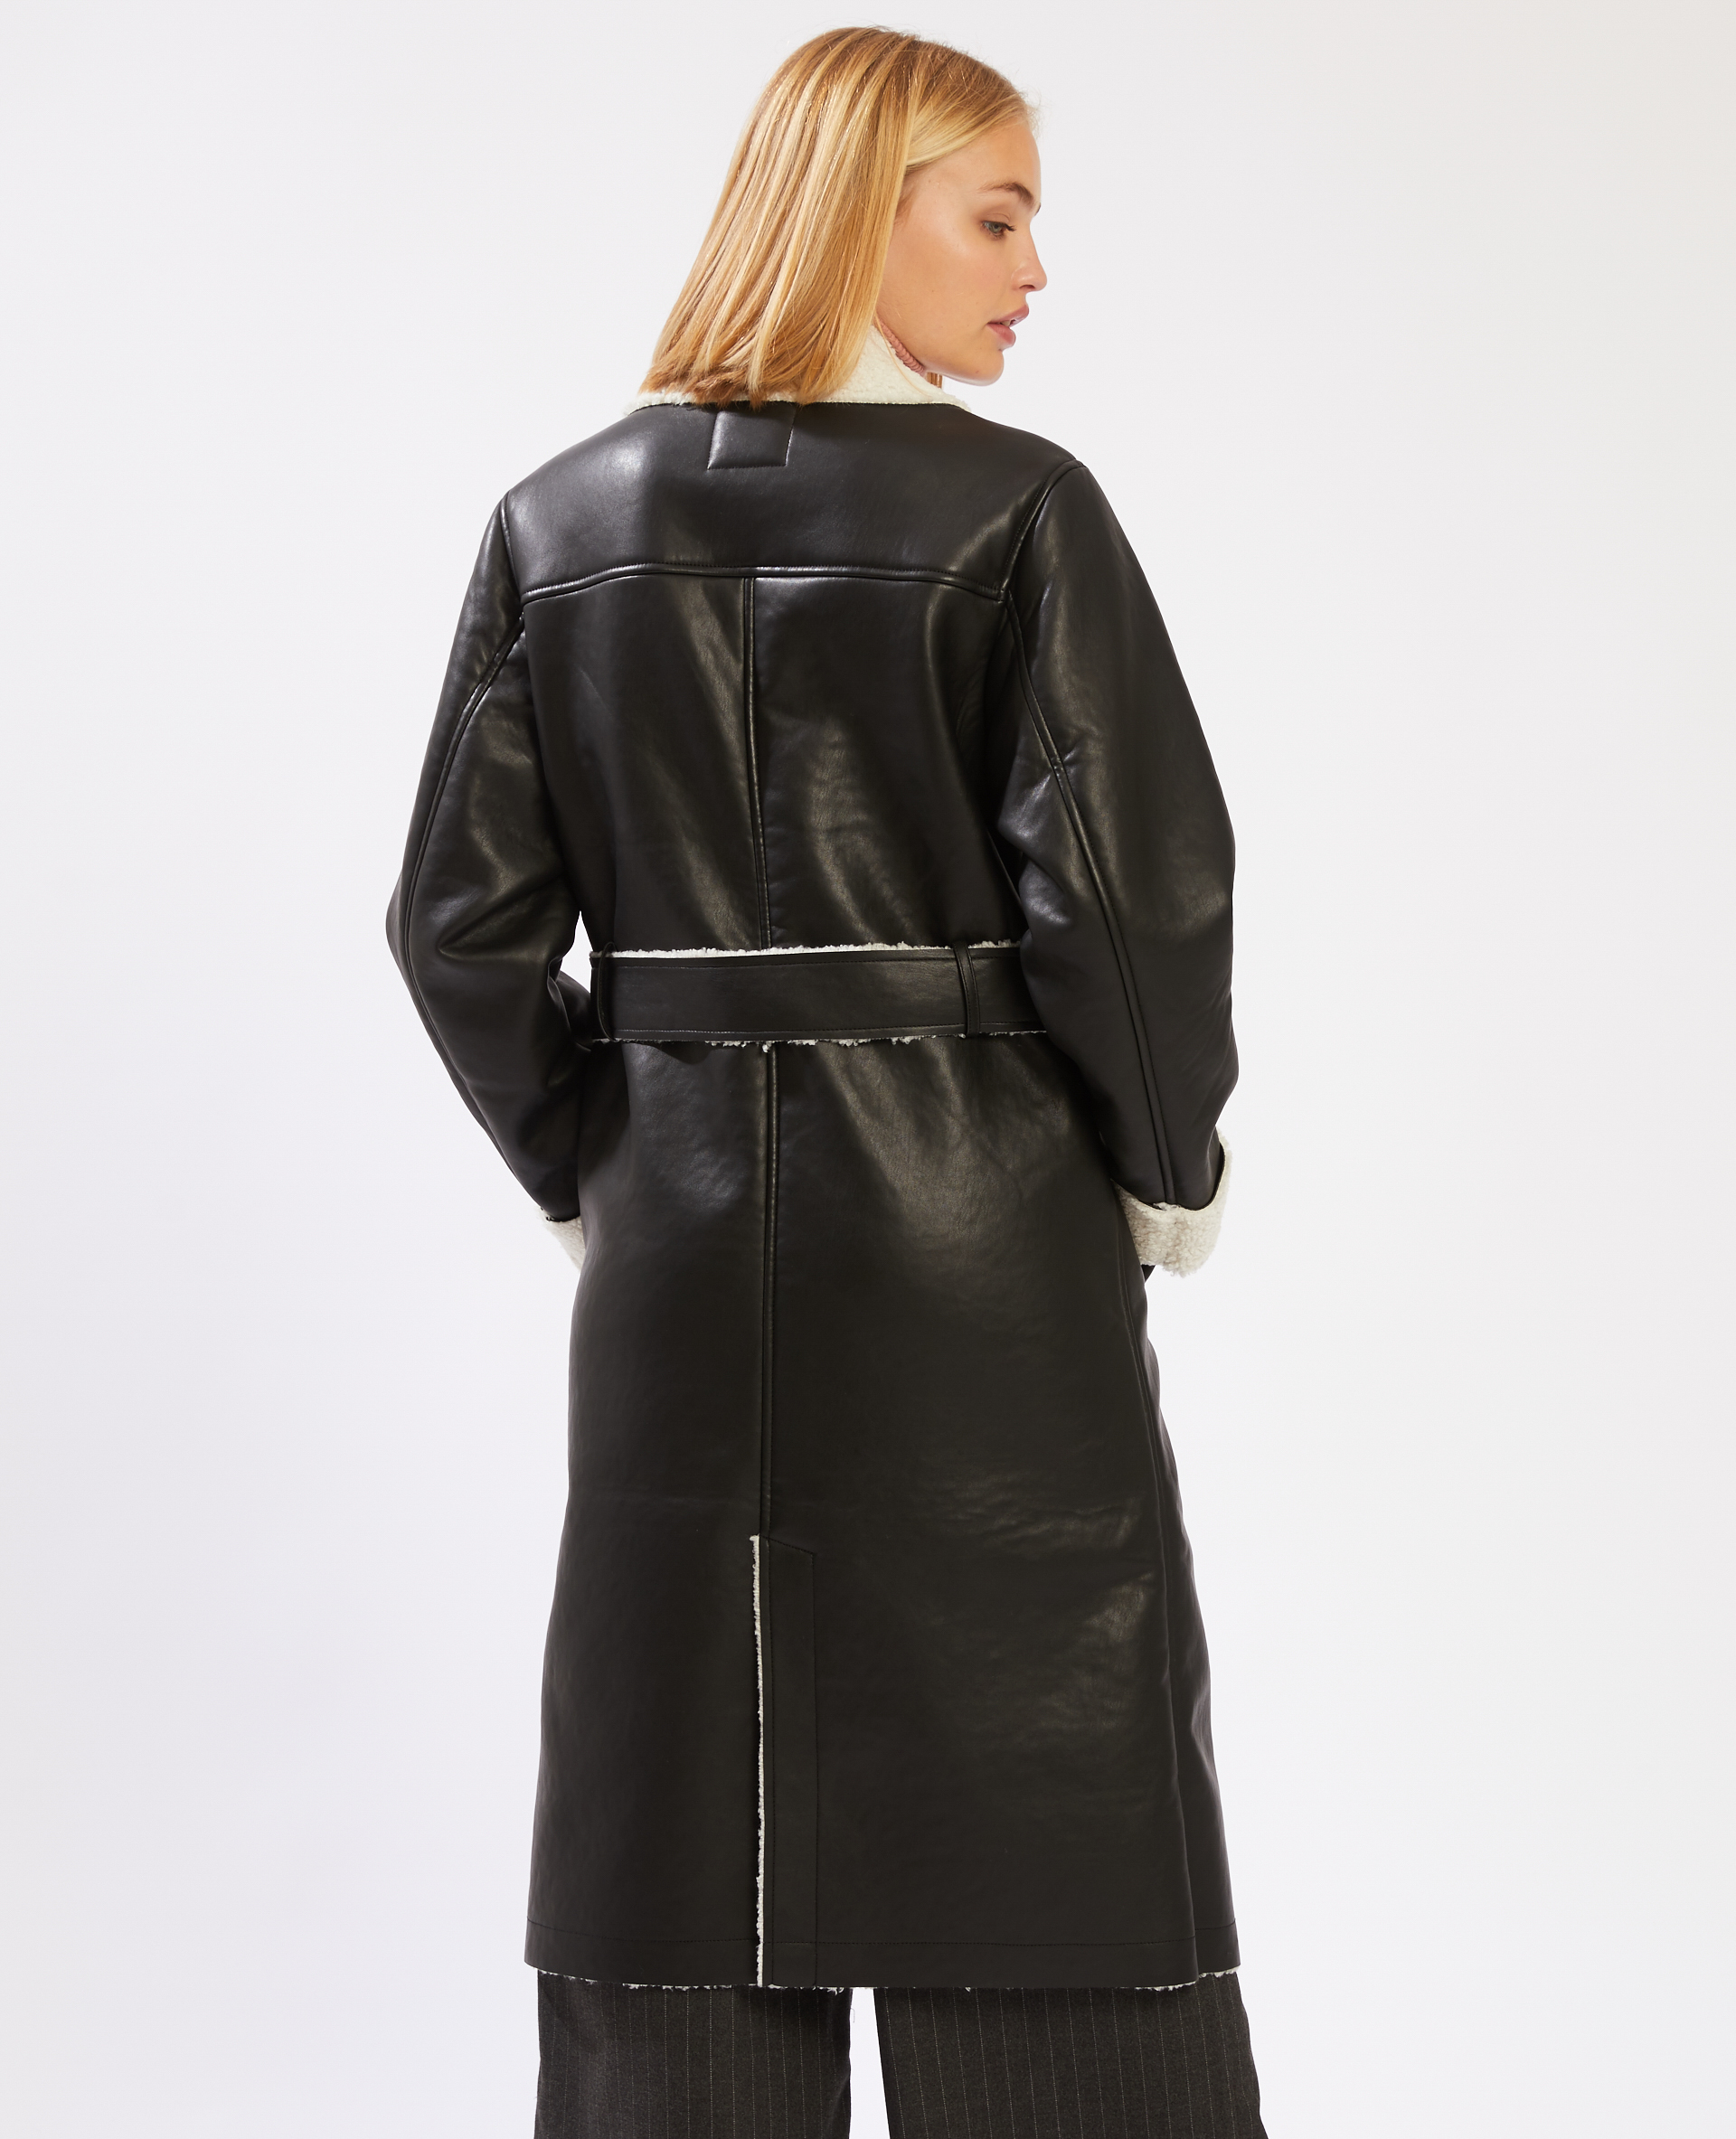 manteau femme imitation cuir